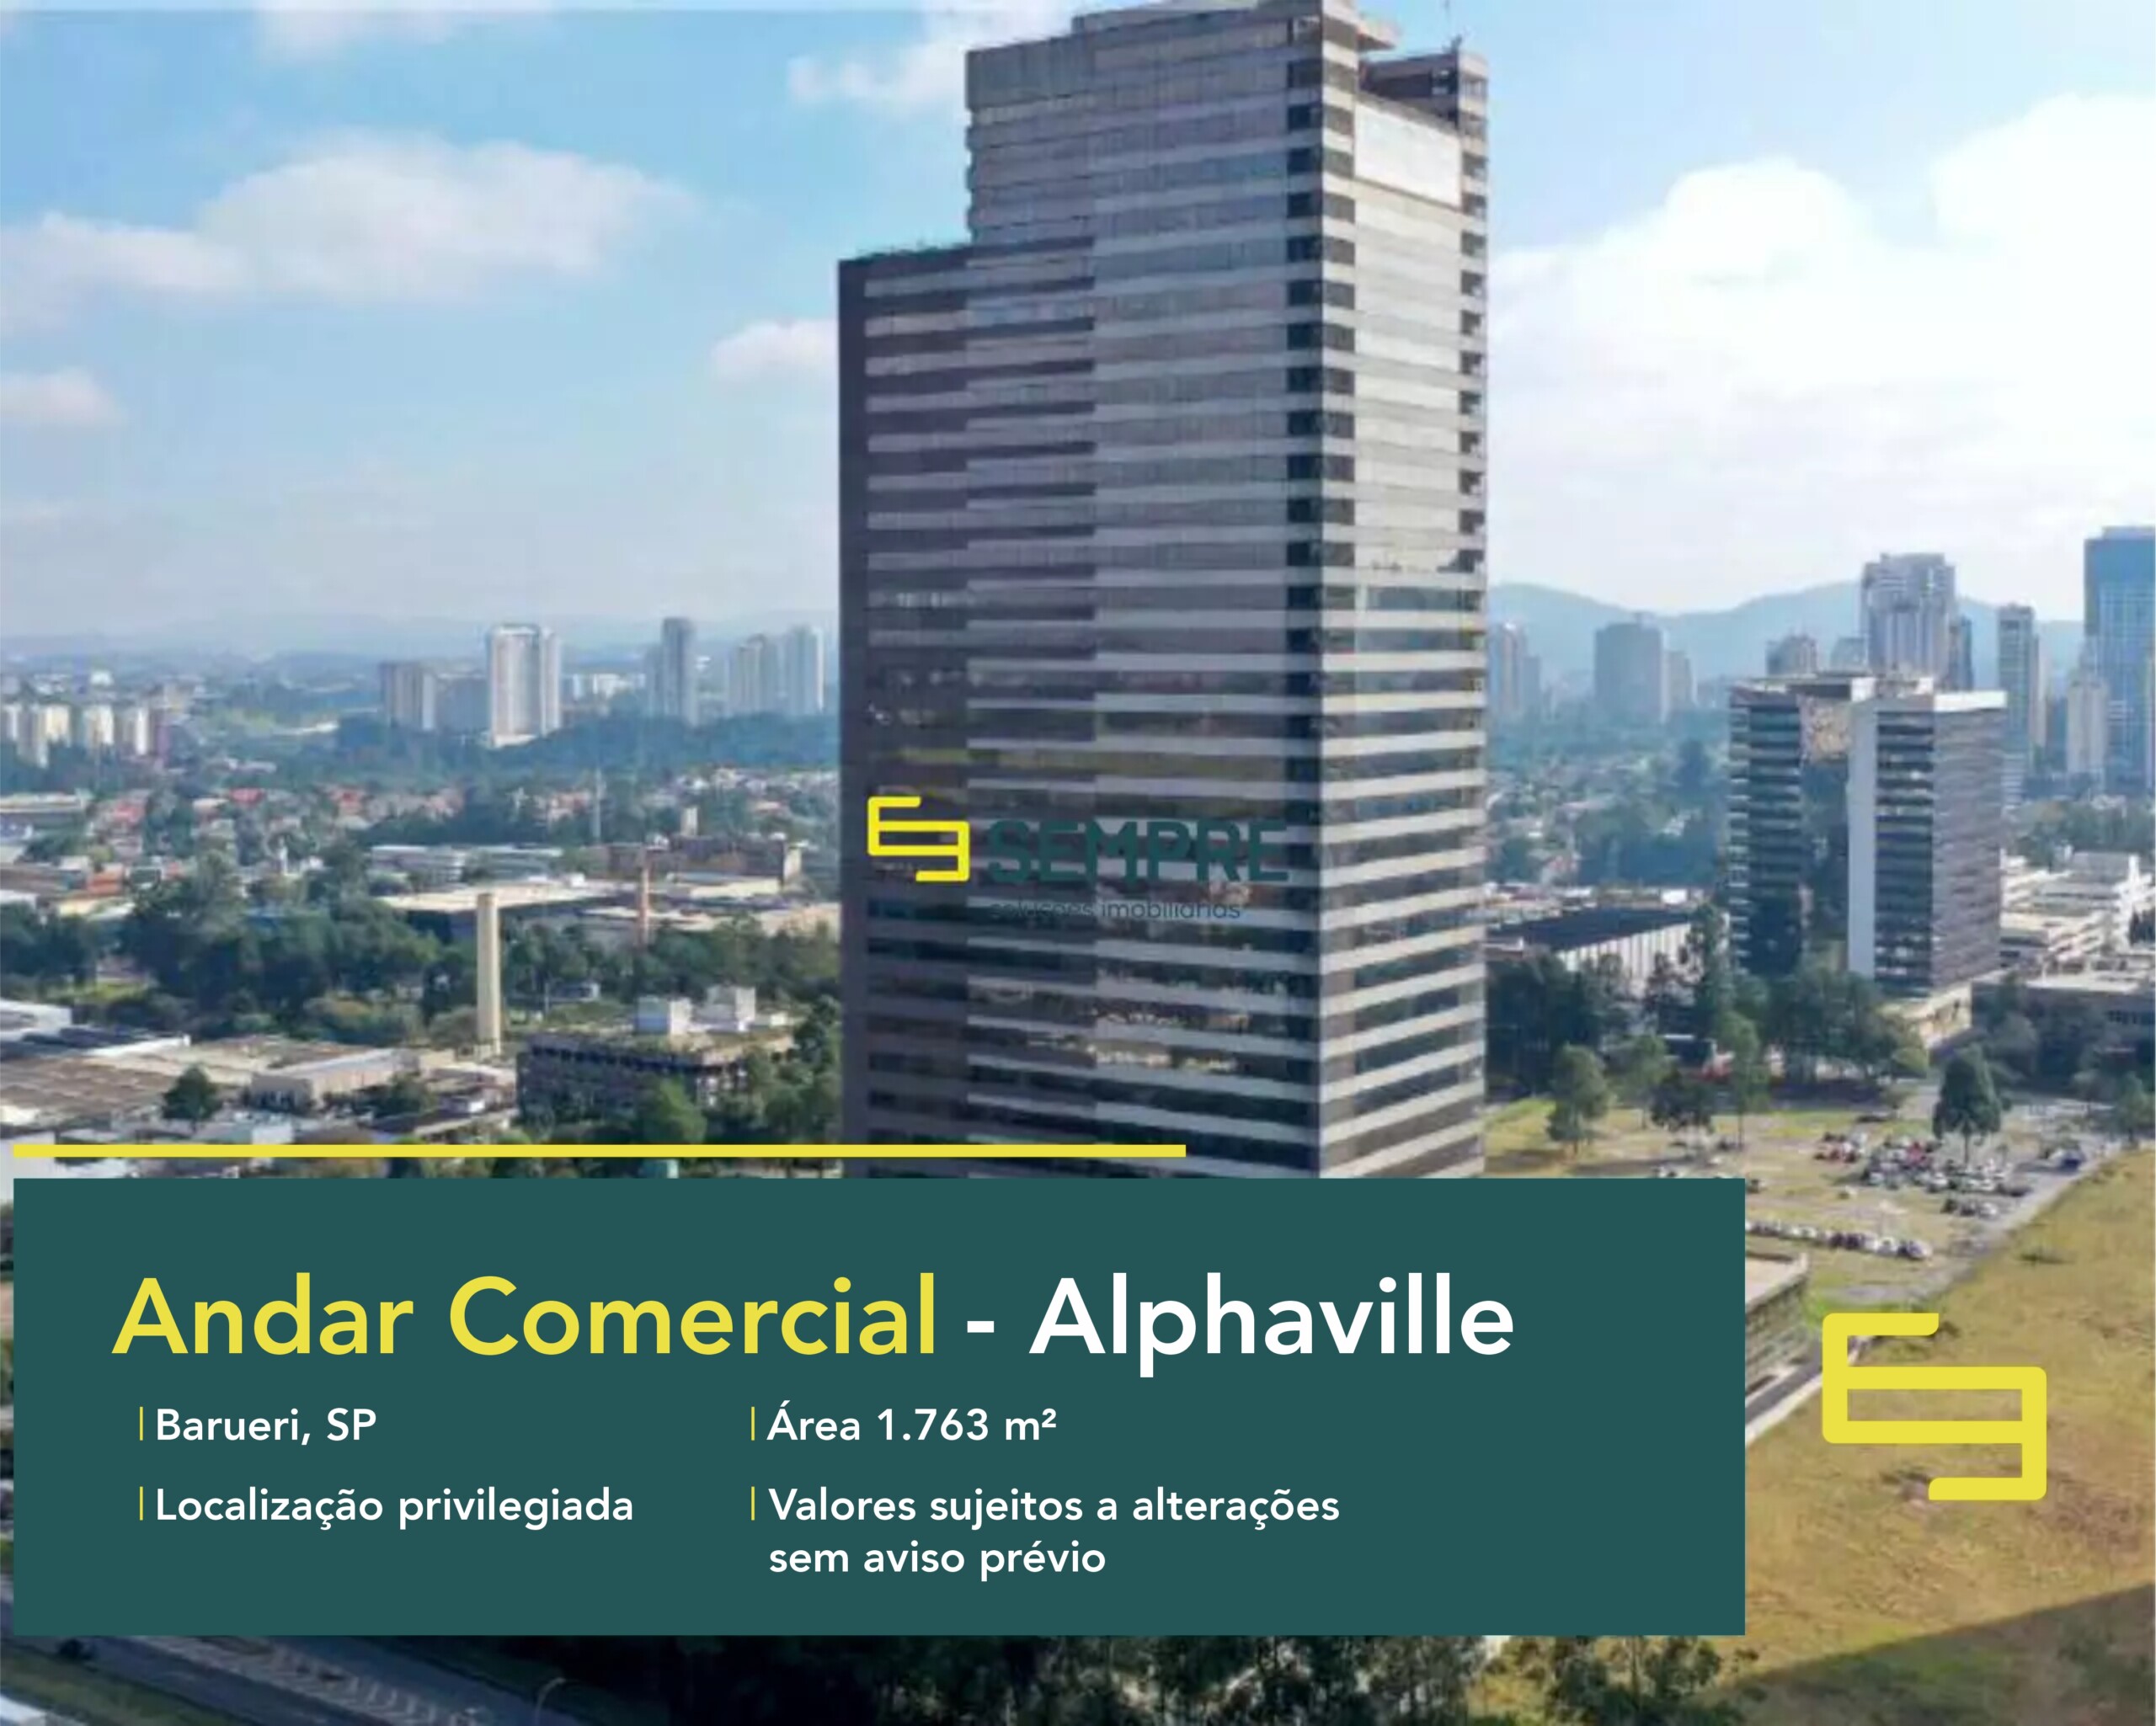 Laje corporativa para locação em São Paulo - Evolution Corporate, excelente localização. O ponto comercial conta com área de 1.763,97 m².